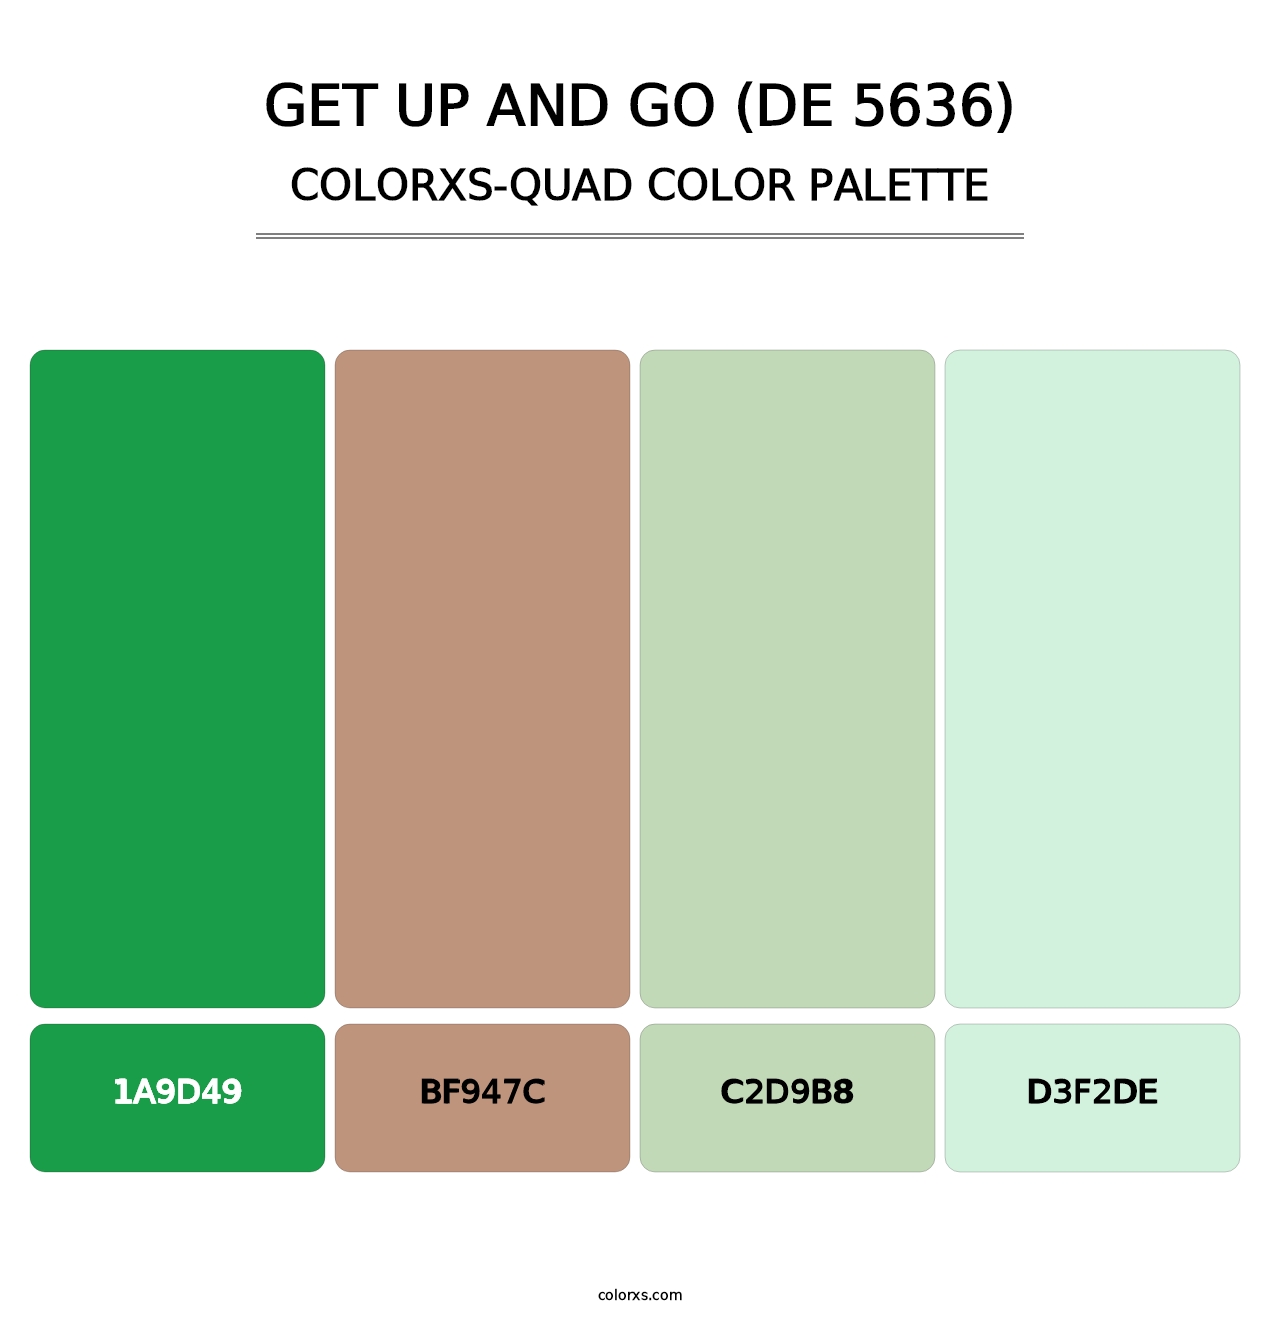 Get Up and Go (DE 5636) - Colorxs Quad Palette